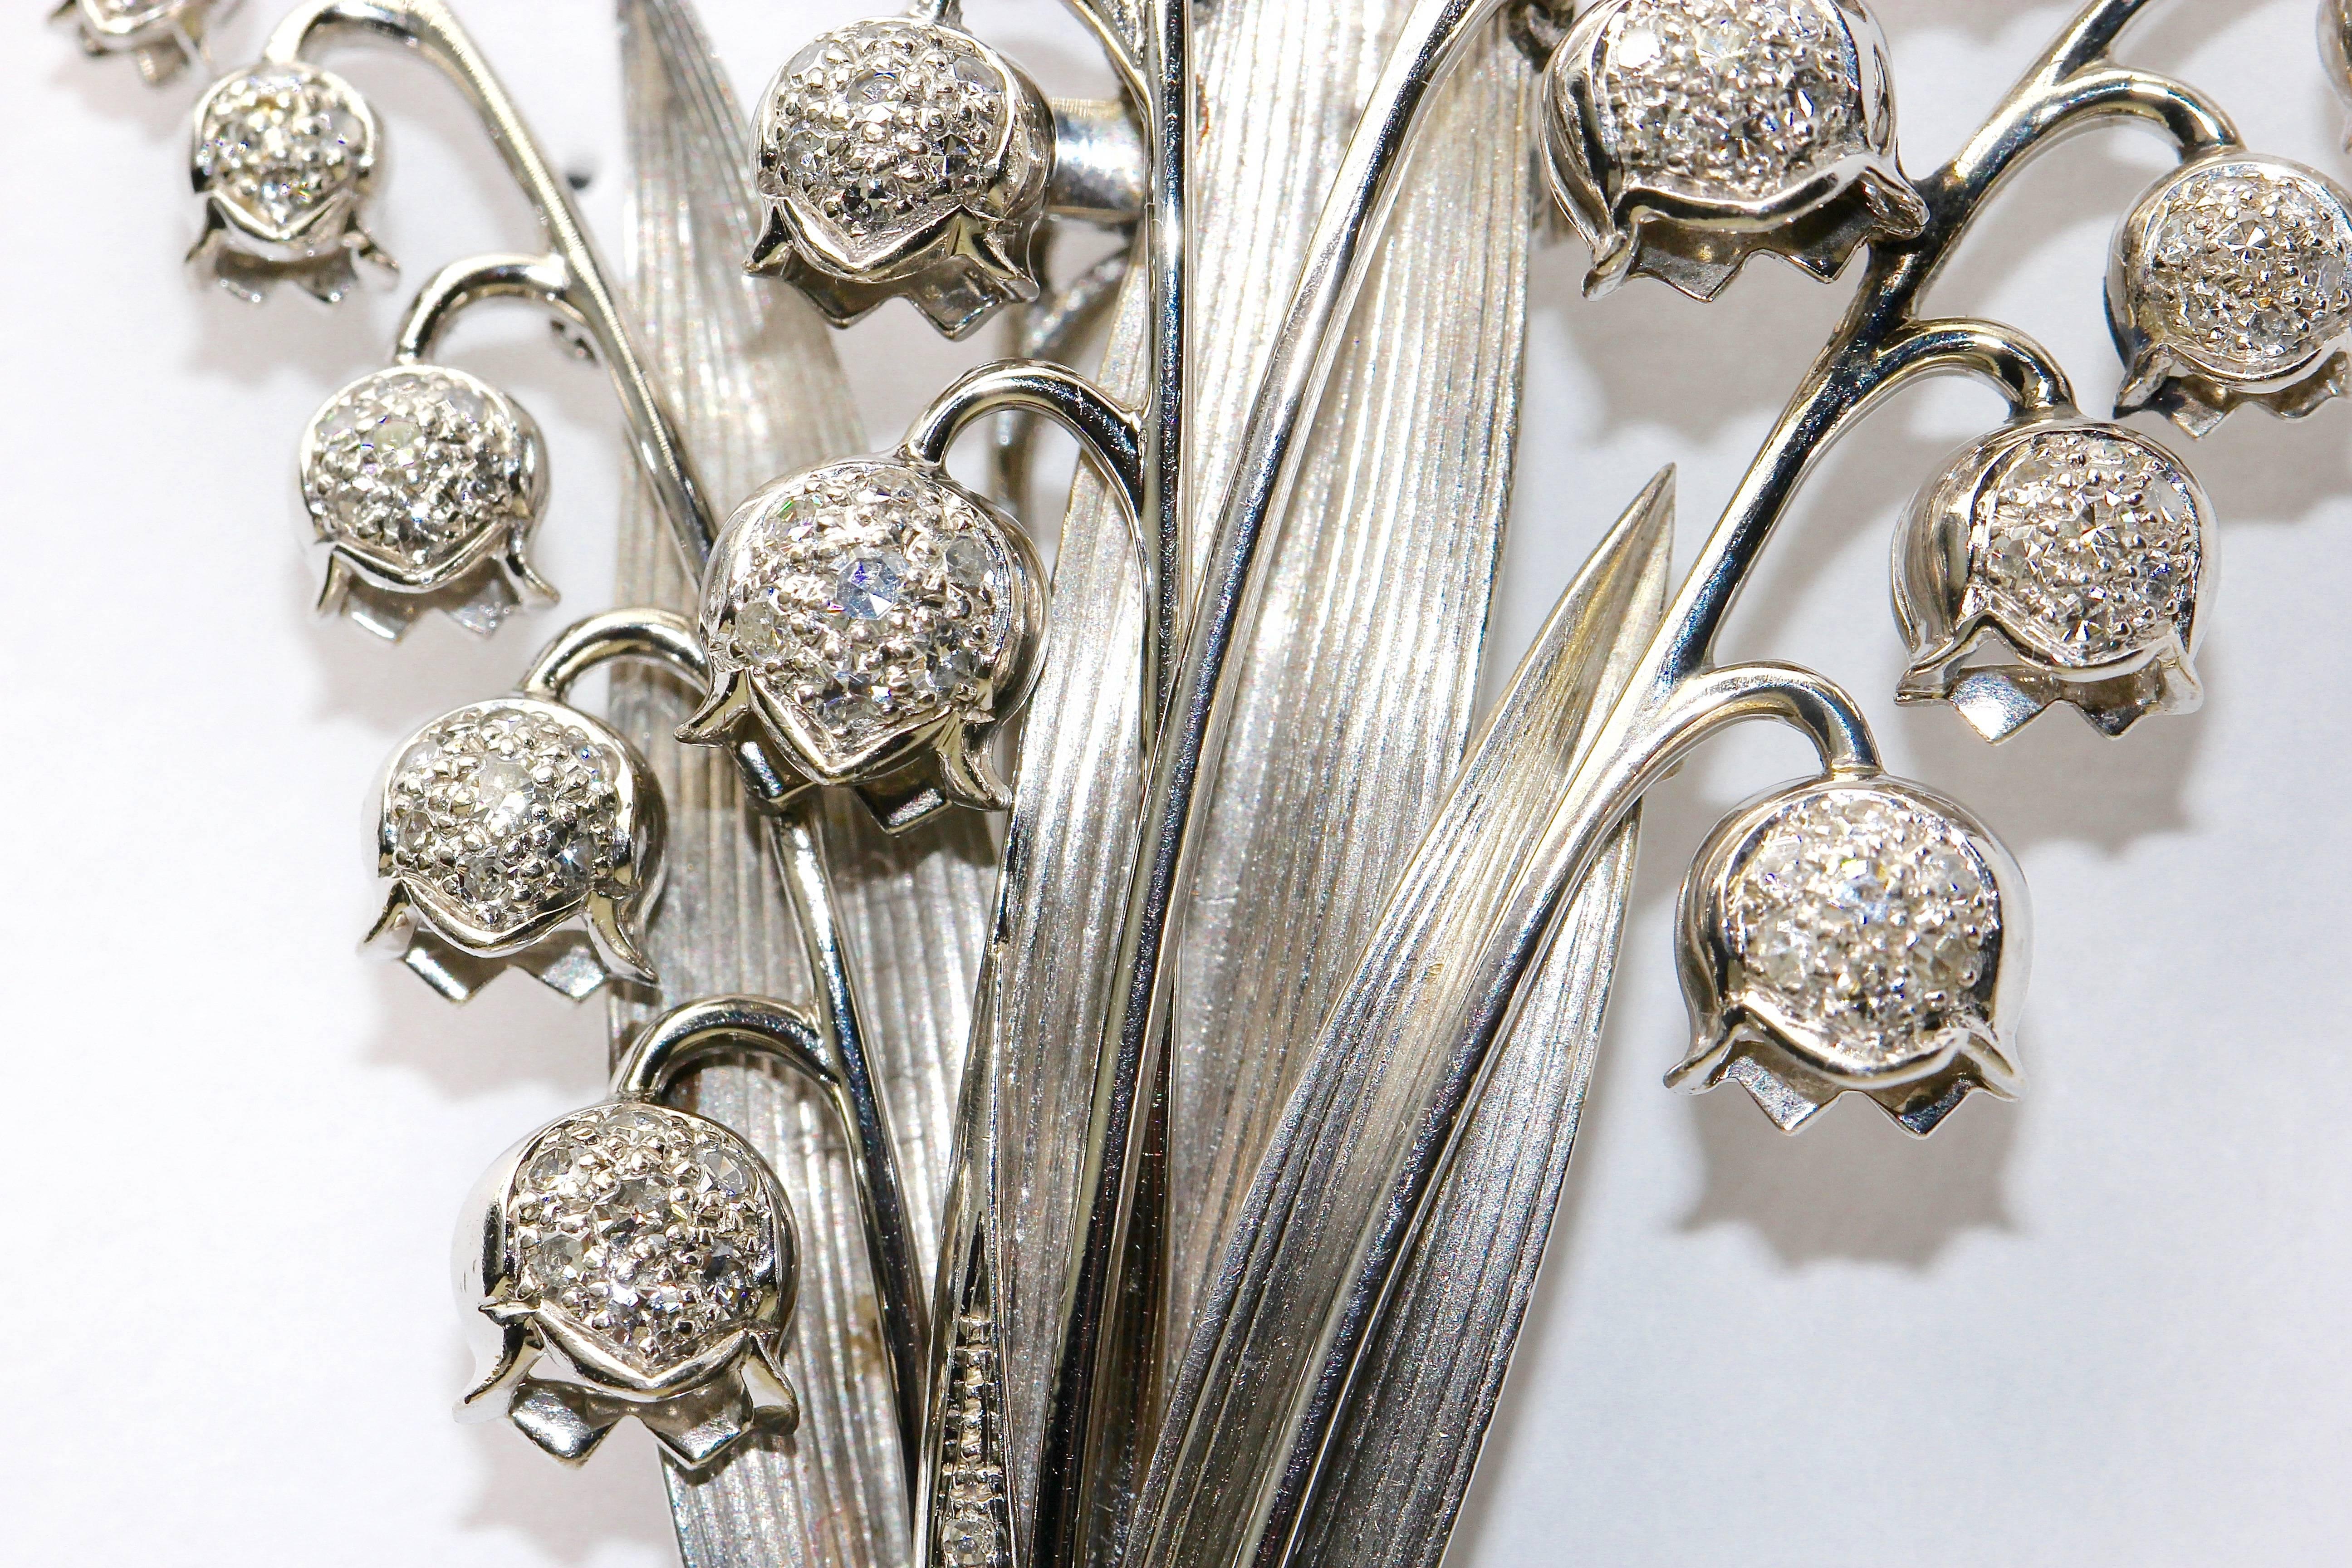 Round Cut 18 Karat White Gold Brooch with Diamonds, Floral Design